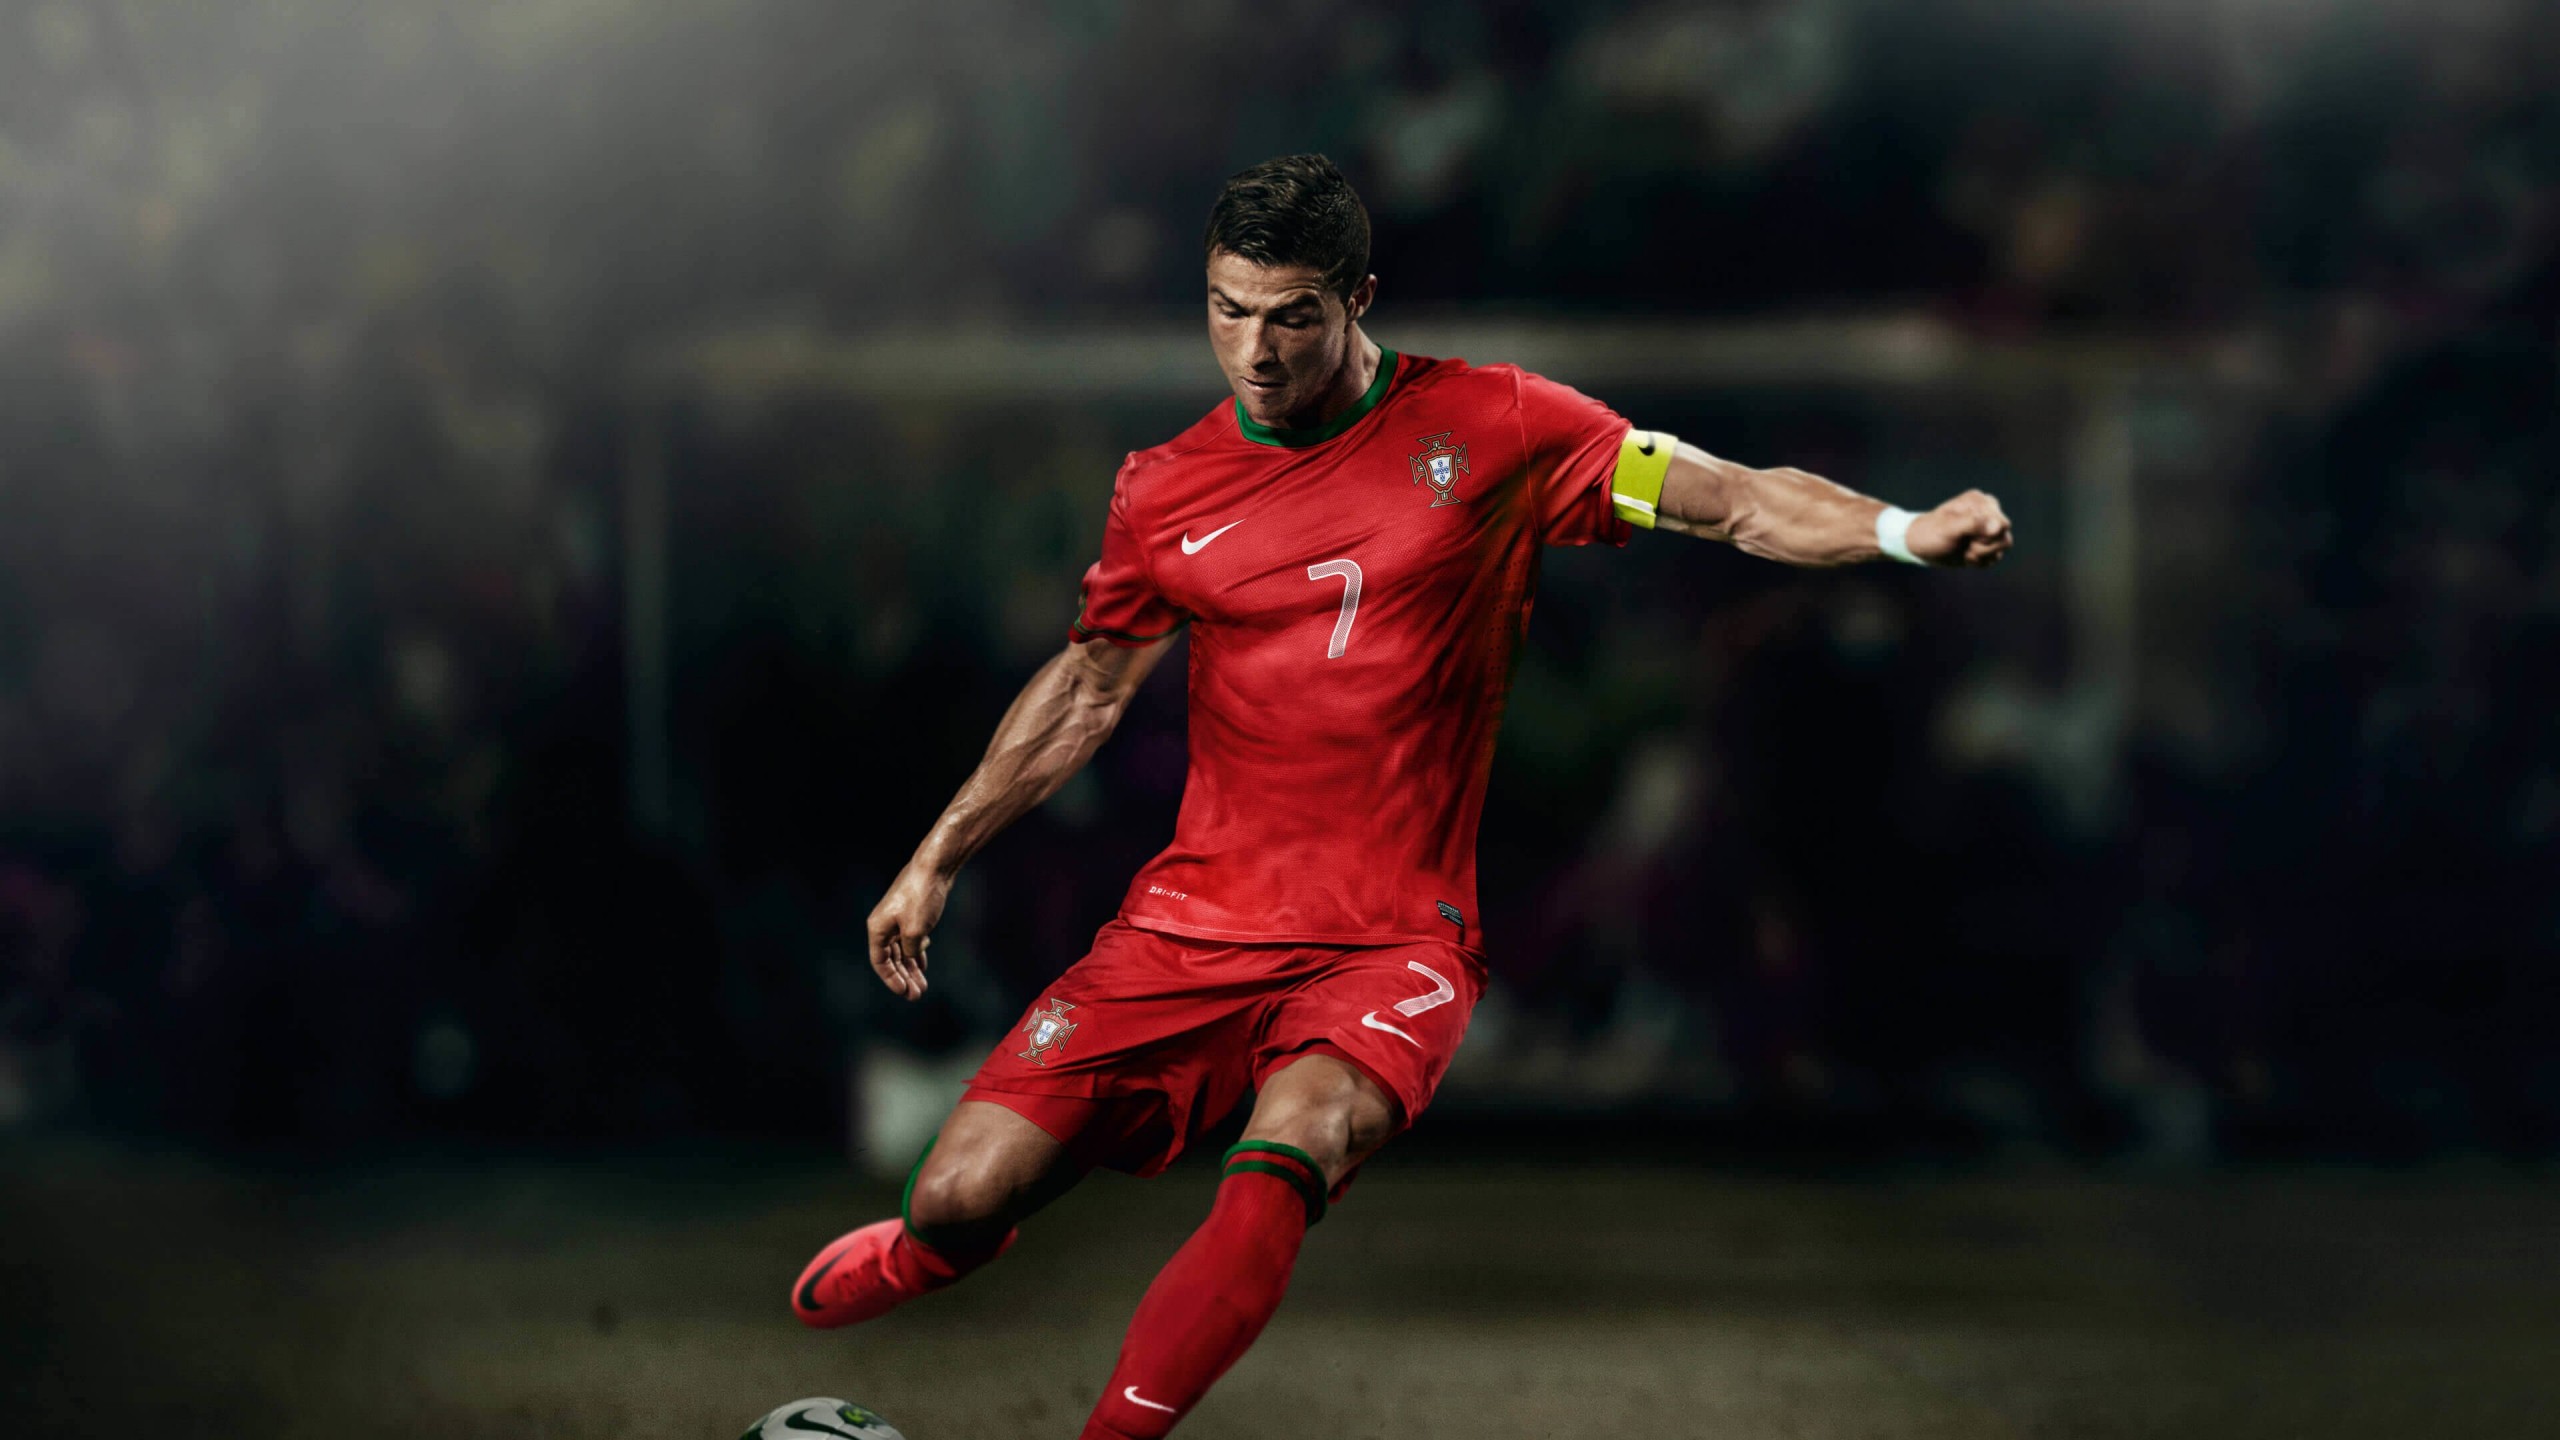 Cristiano Ronaldo In Portugal Jersey Wallpaper for Desktop 2560x1440